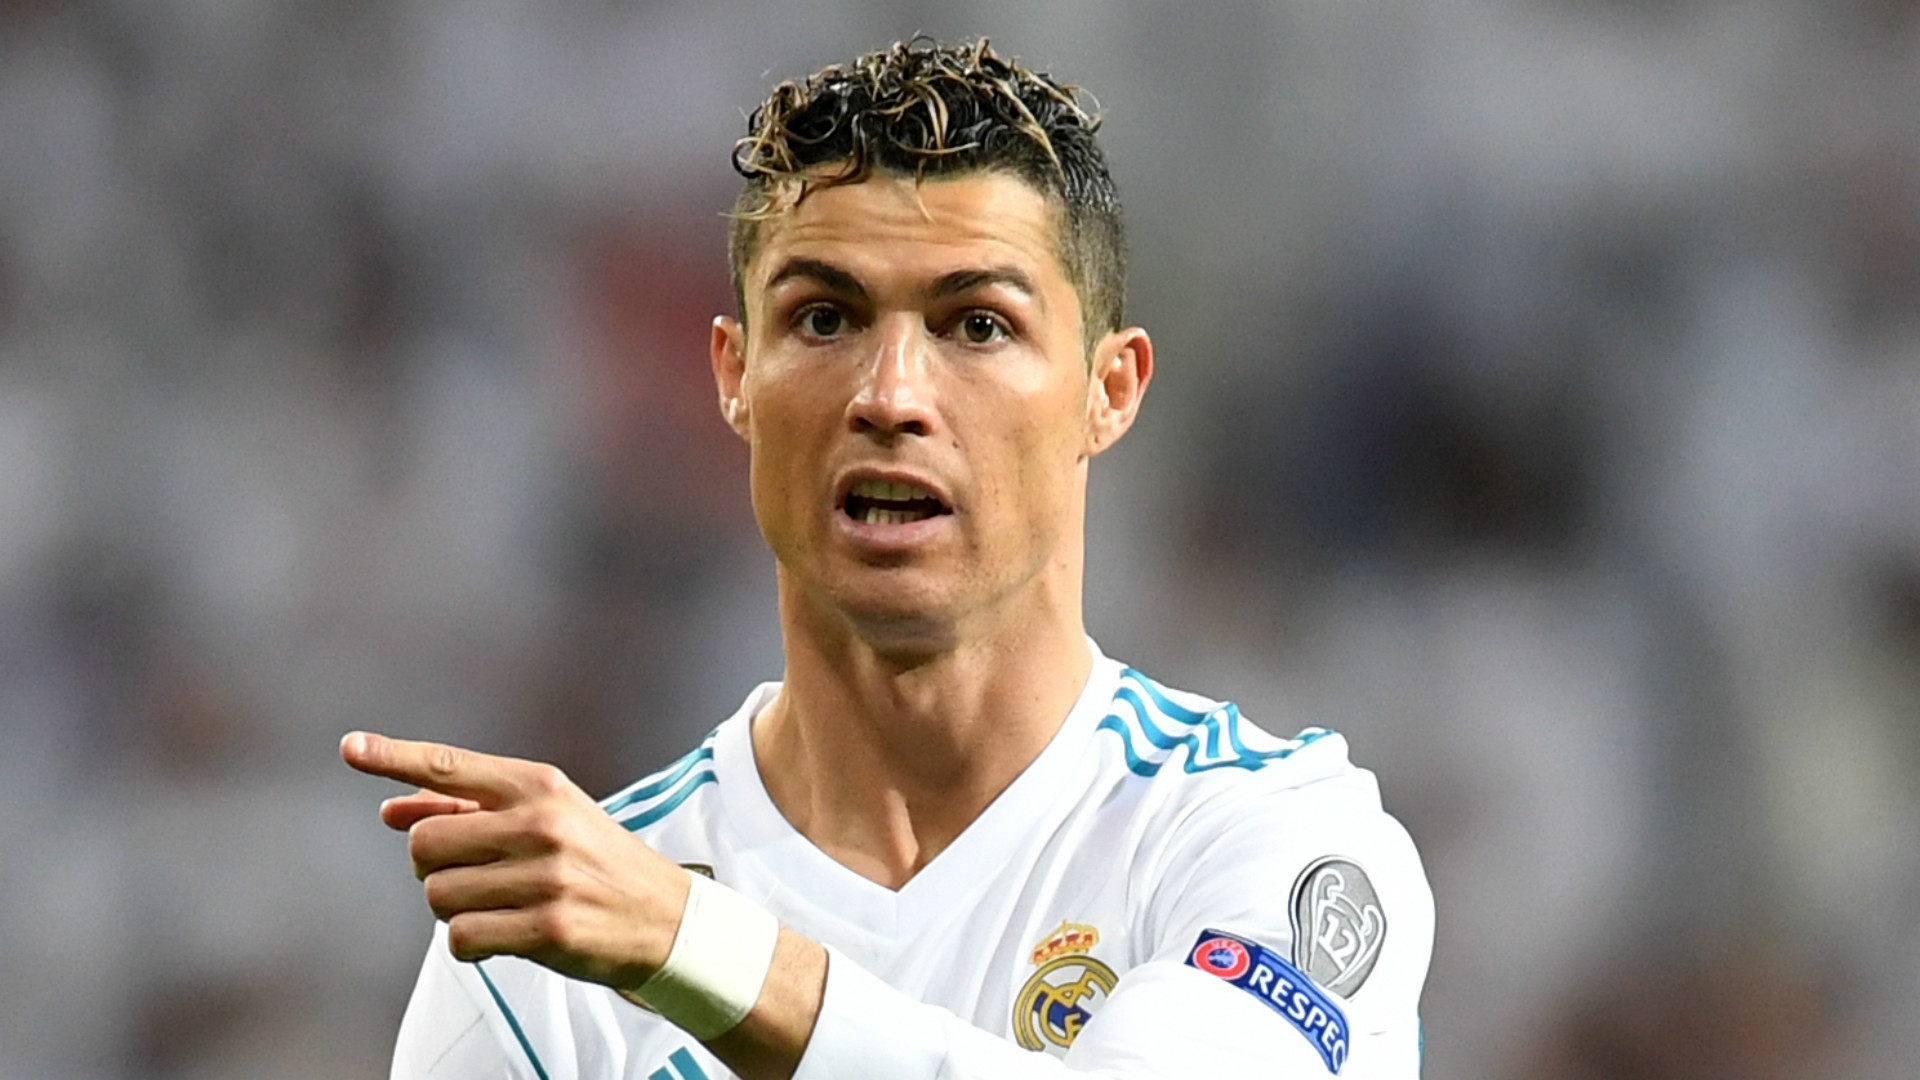 Ronaldo Real Madrid - cặp đôi bài trùng